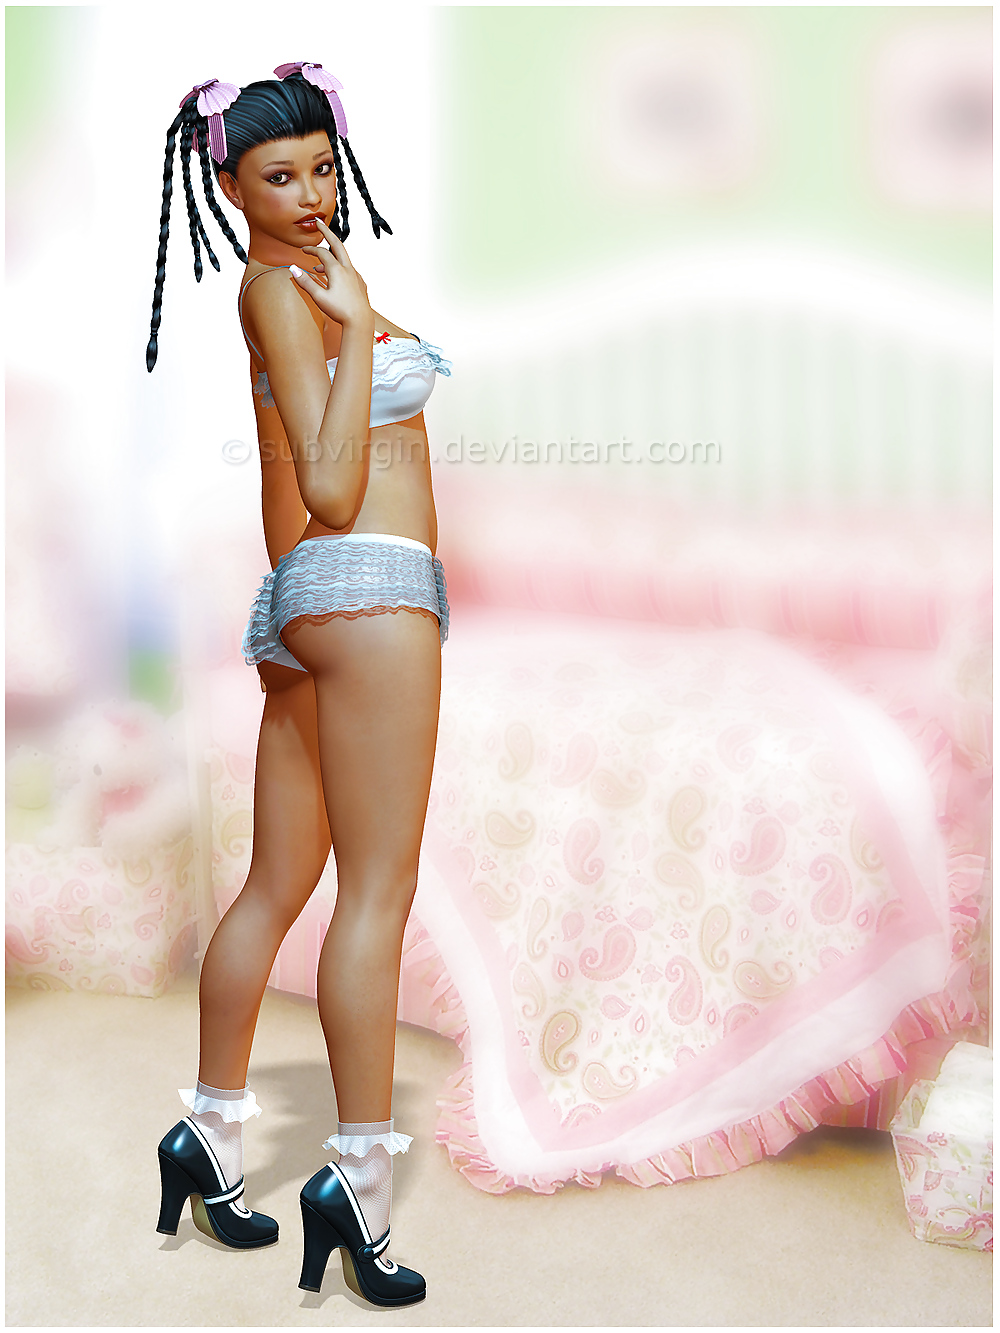 Cheezecake toon art - Teen edition - 3D #3956465